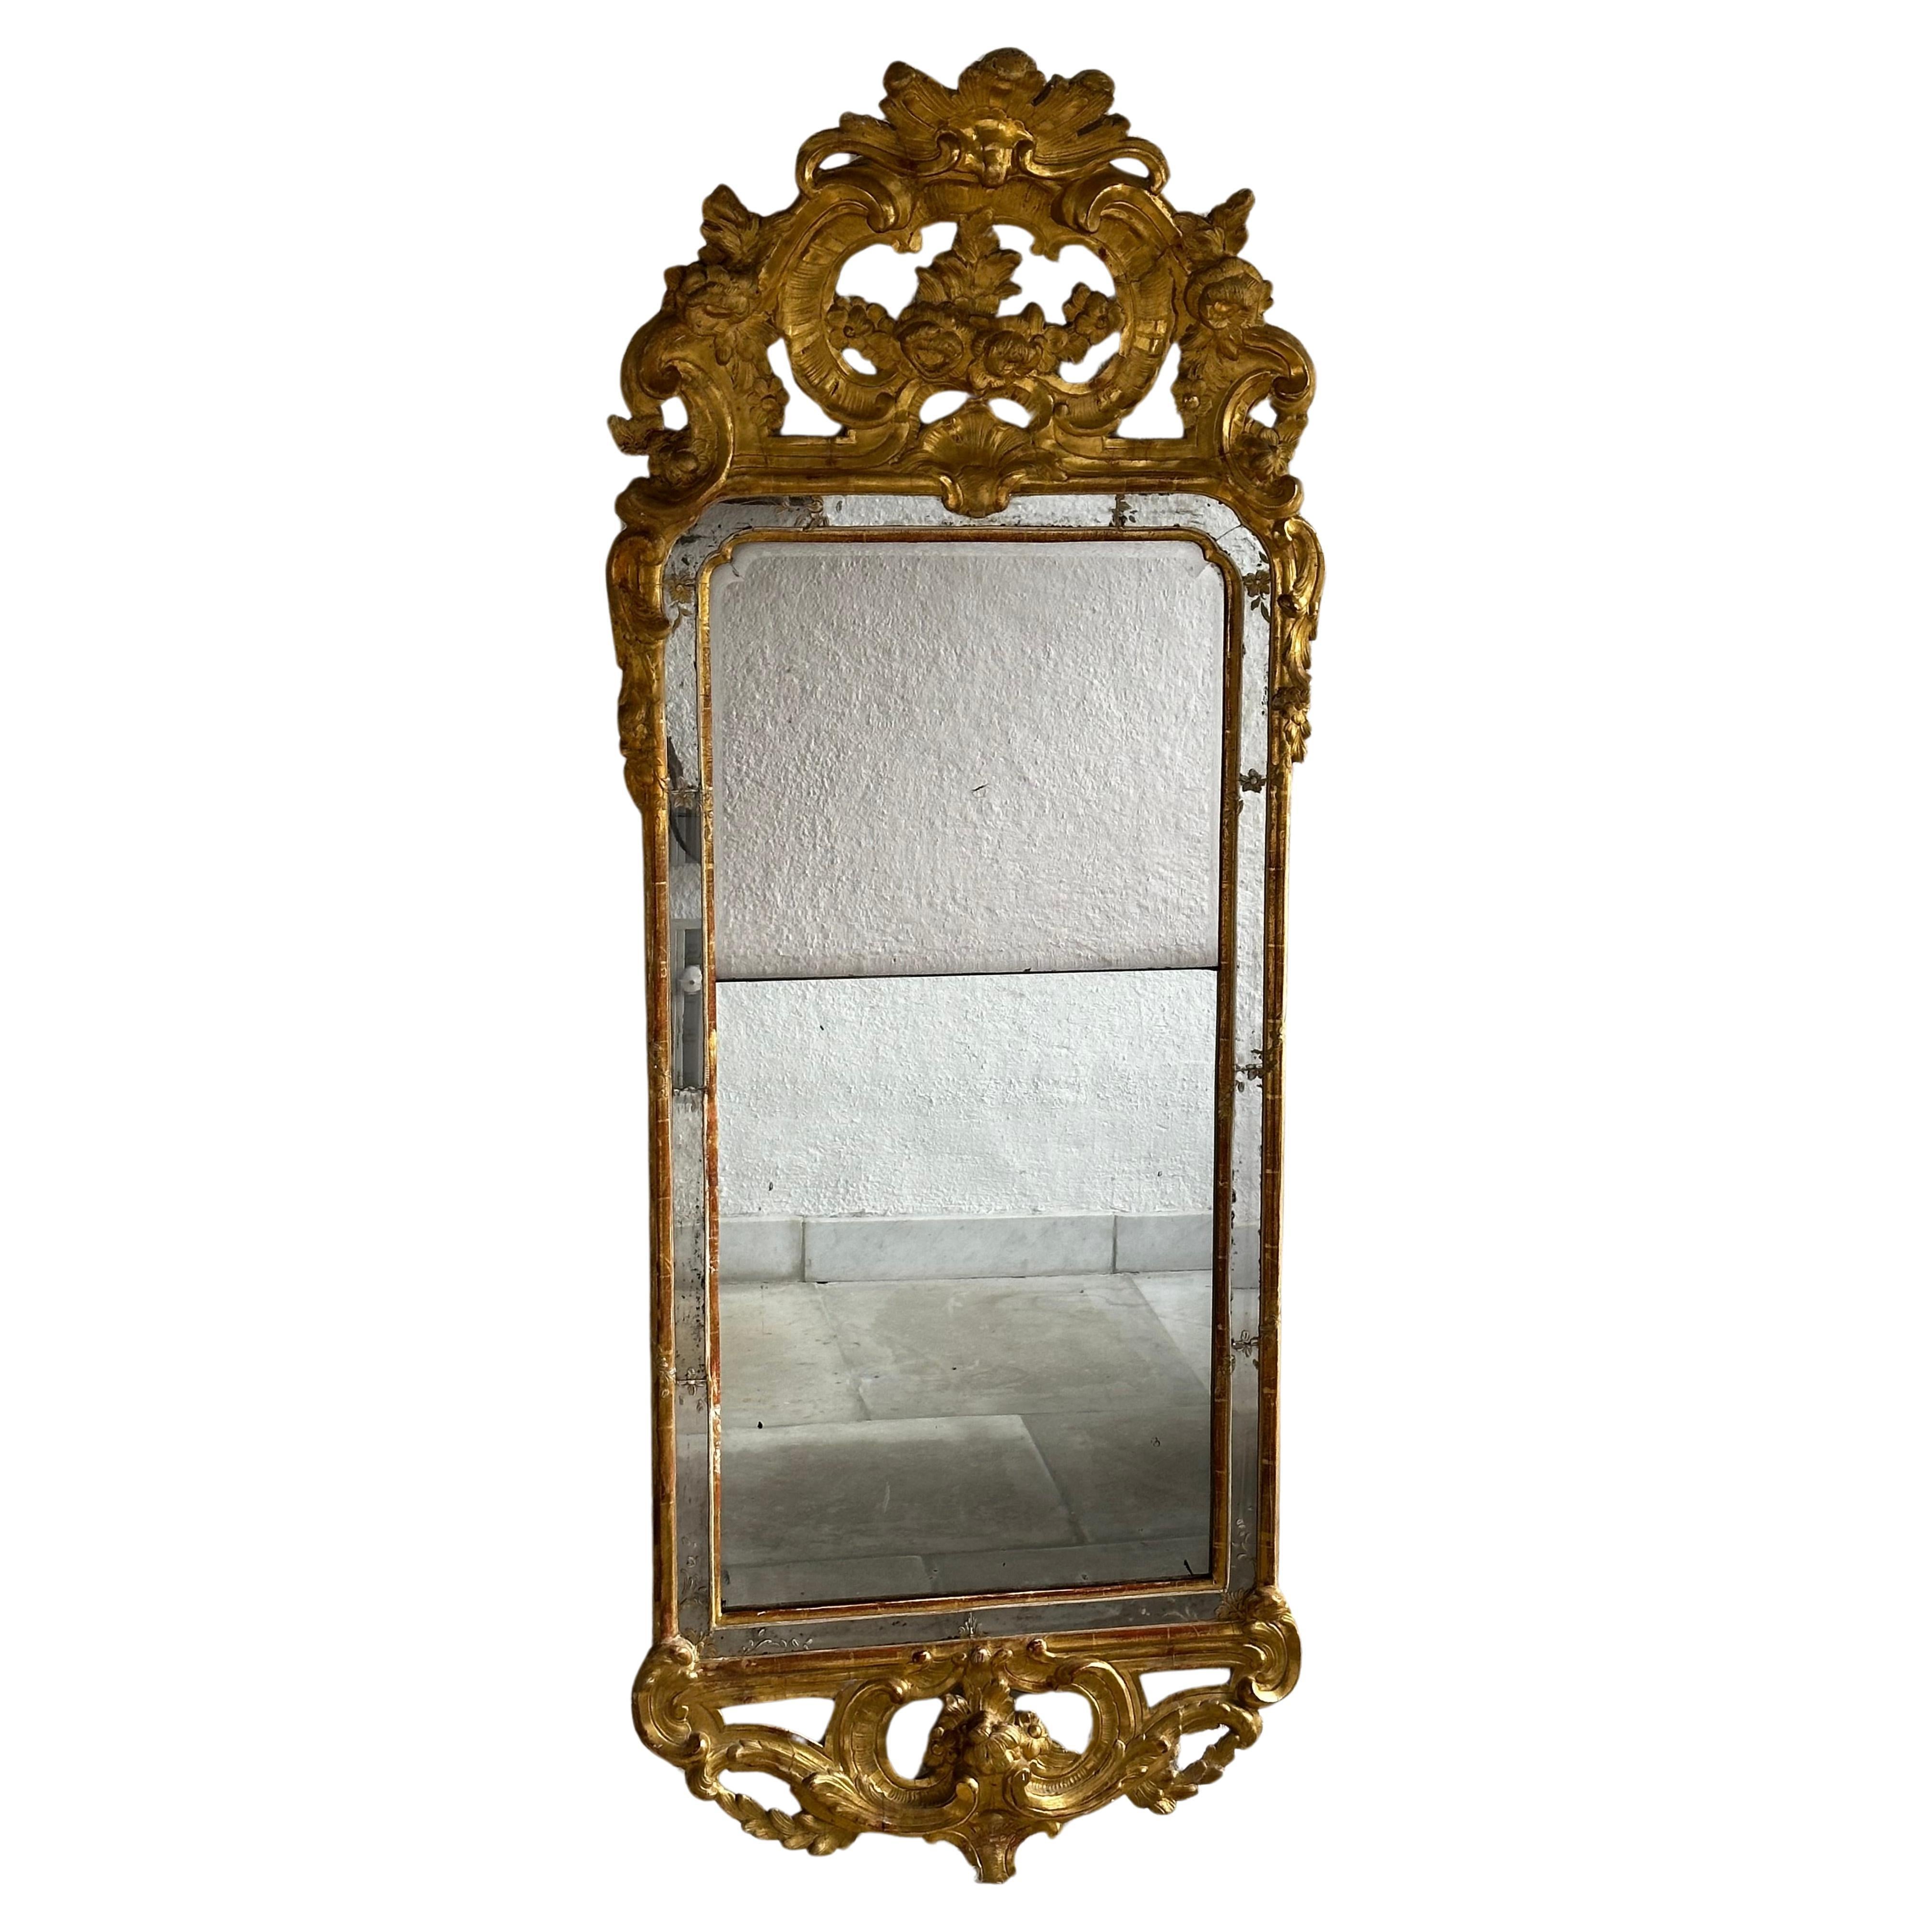 Ein großer Spiegel, der Johan Åkerblad zugeschrieben wird, nicht signiert. Er war ein Spiegelhersteller in Stockholm von 1758 bis 1799. Dekoration aus Pappmaché. 
Der Deckel ist mit Akanthus, Rocaille und Voluten verziert.